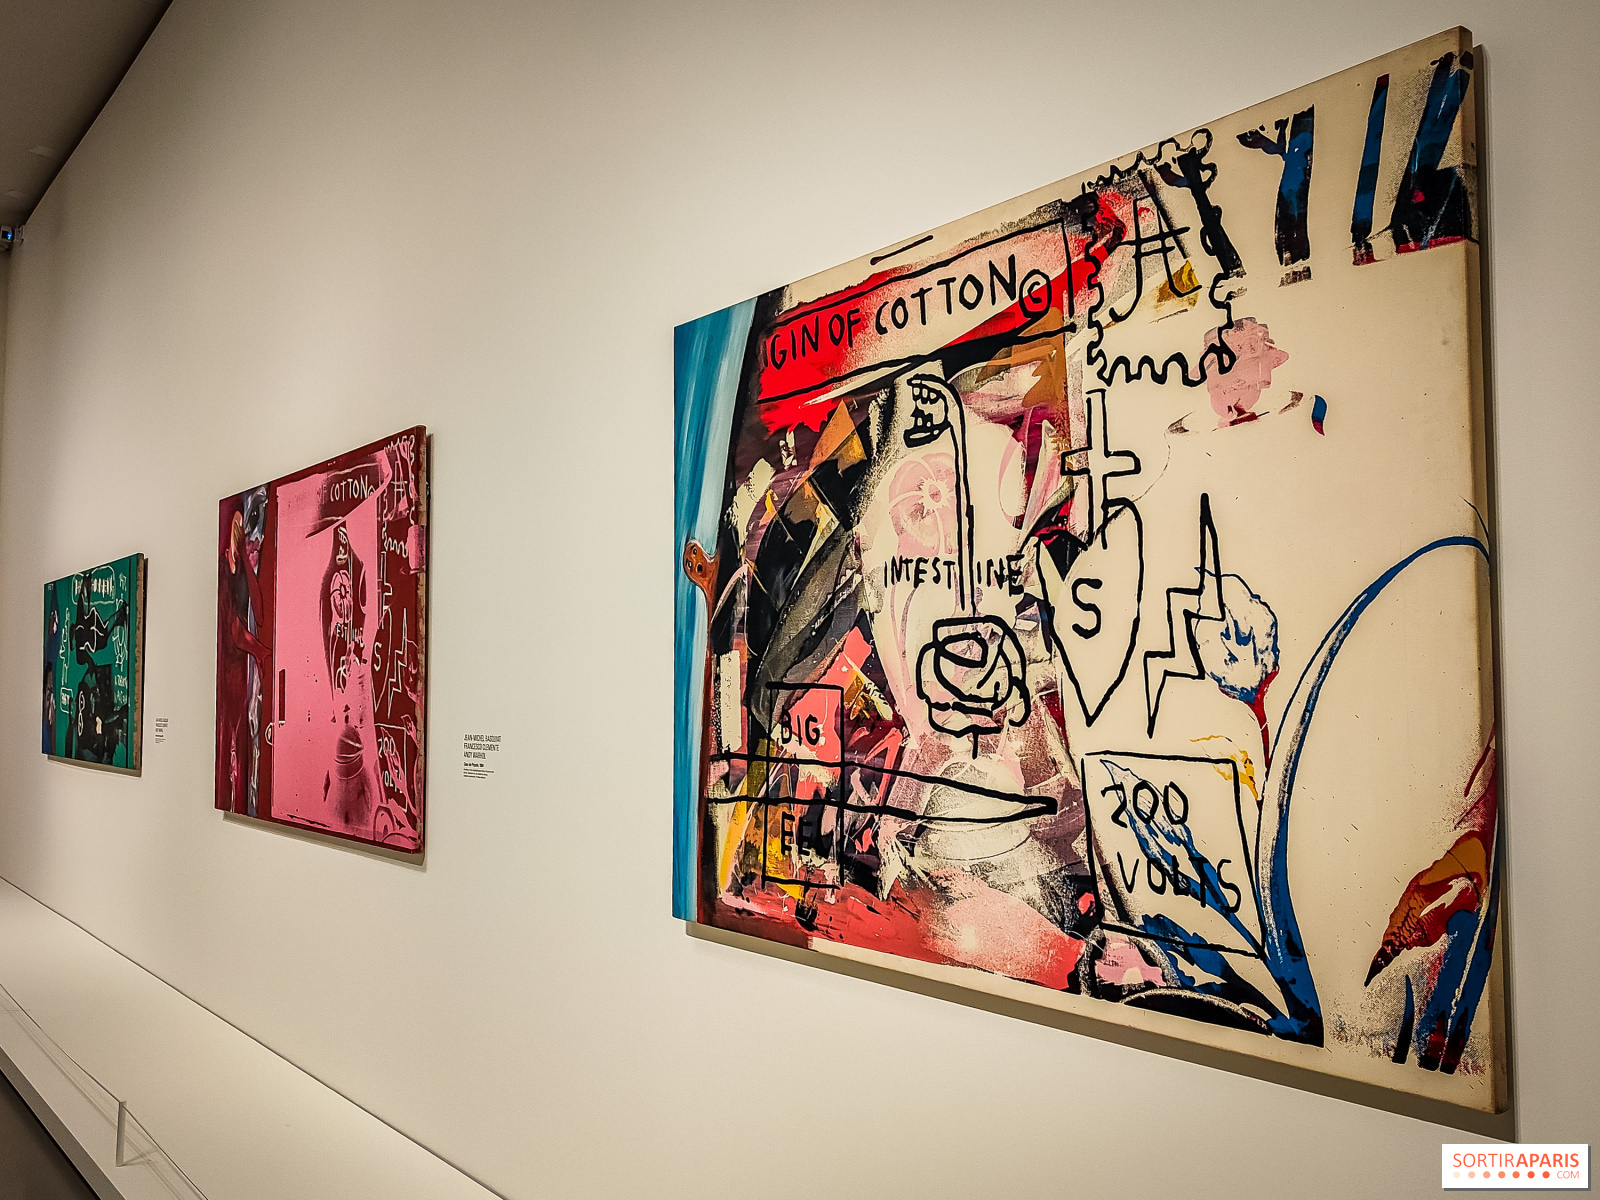 Louis Vuitton di LinkedIn: Now Open: “Basquiat x Warhol. Painting